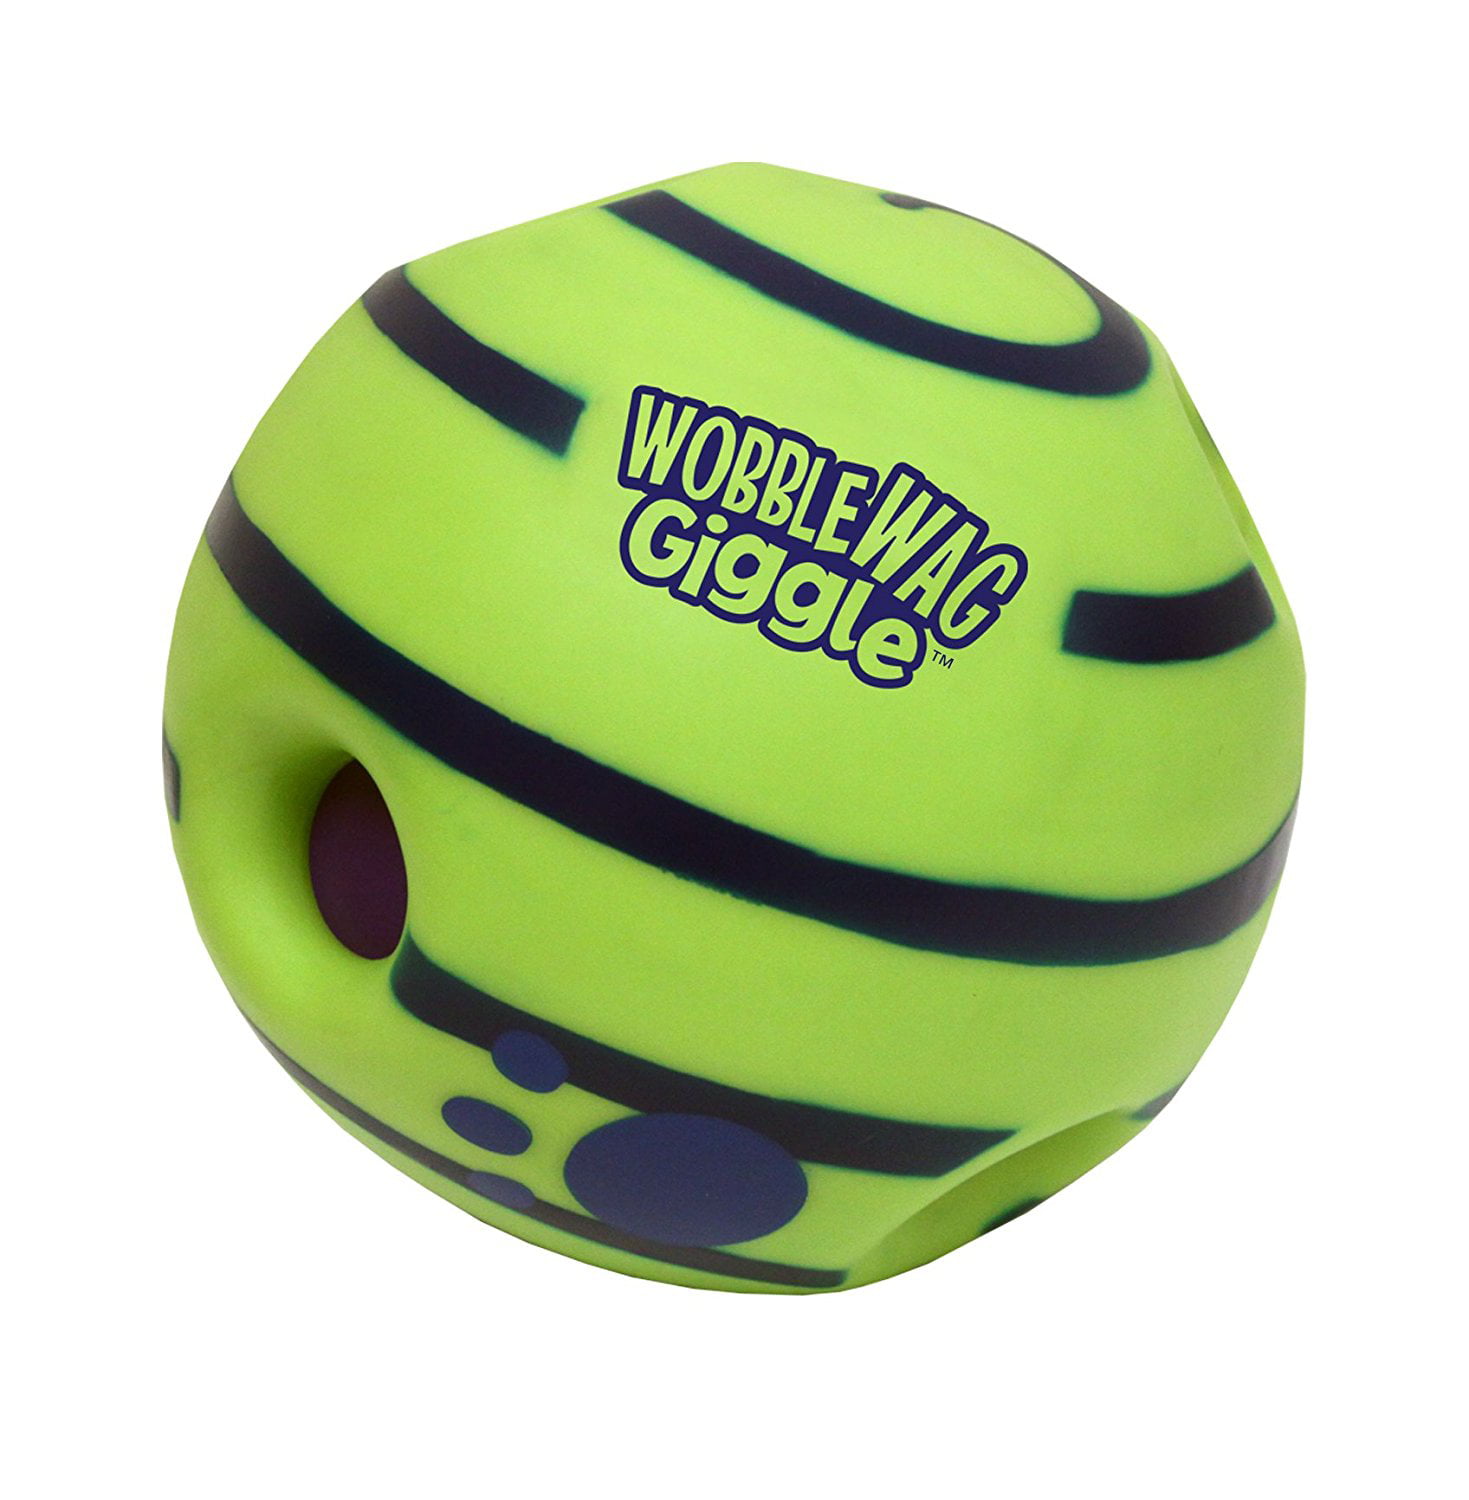 wobble wag giggle ball